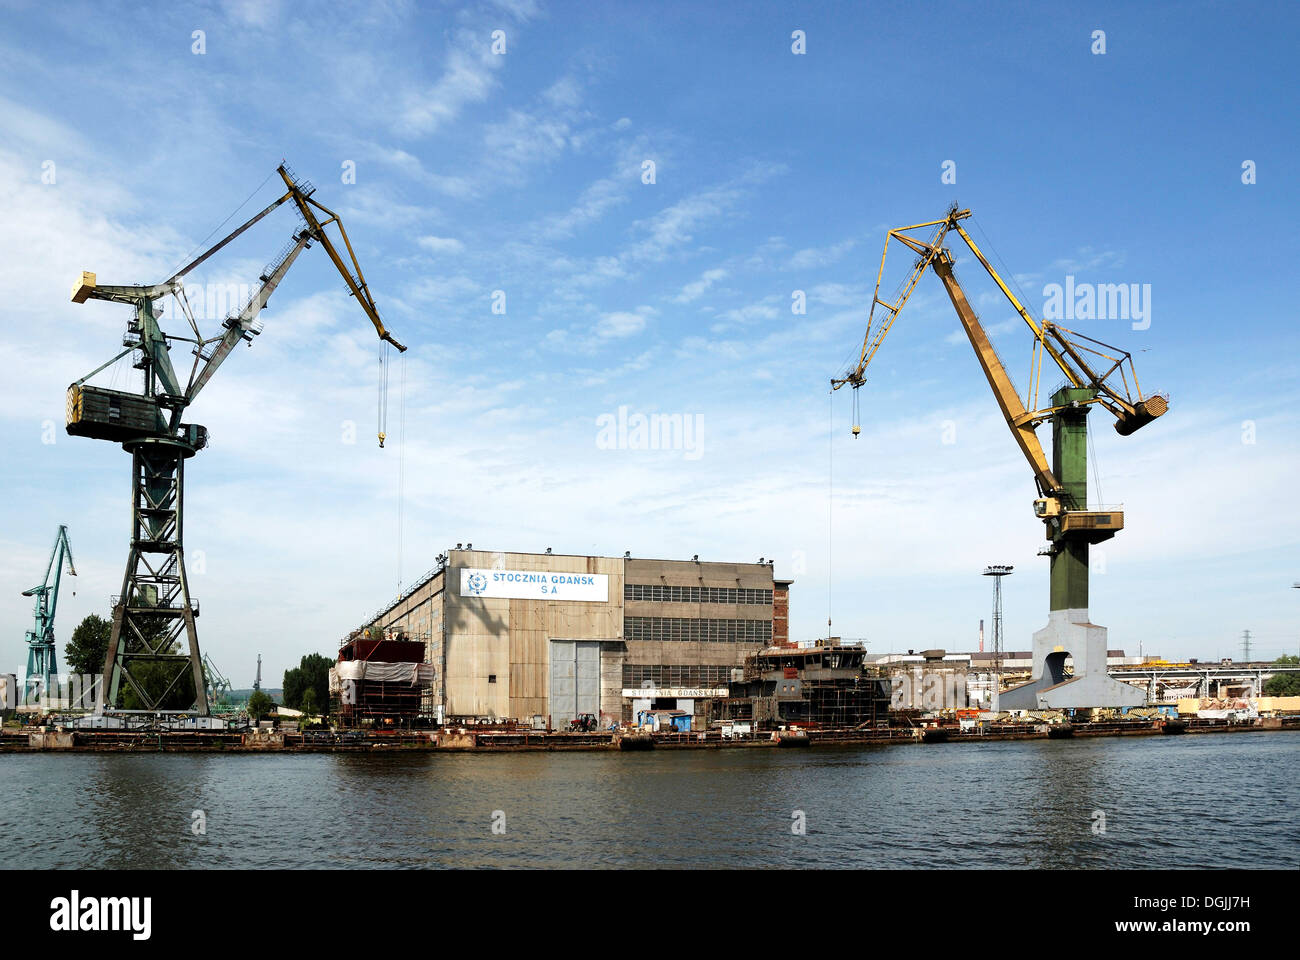 Polnischen Werft Stocznia Gdańsk an der Weichsel - Lenin-Werft von 1950 bis 1990. Stockfoto